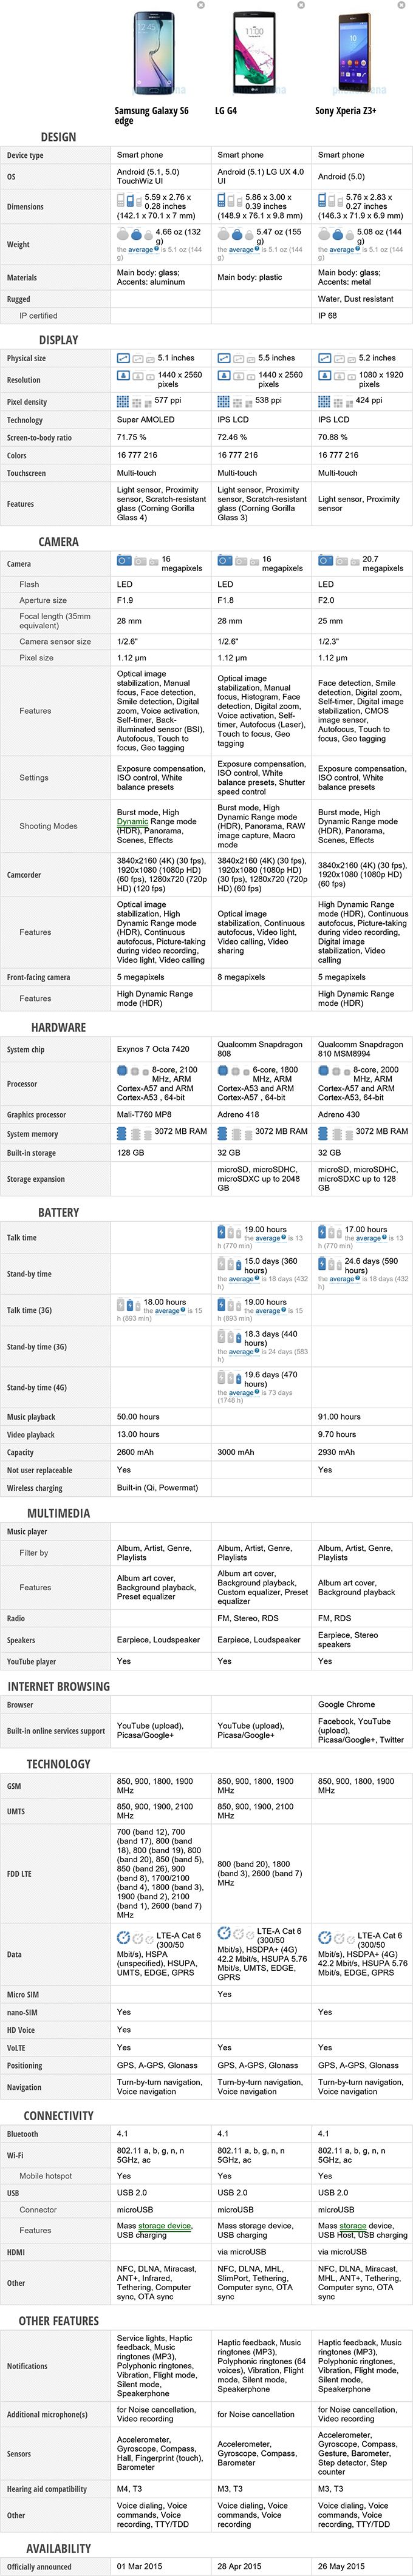 ทดสอบกล้อง iPhone 6 และ iPhone 6 Plus เปรียบเทียบกับ iPhone 5s ดีขึ้นสมราคา-น่าเปลี่ยนหรือไม่?